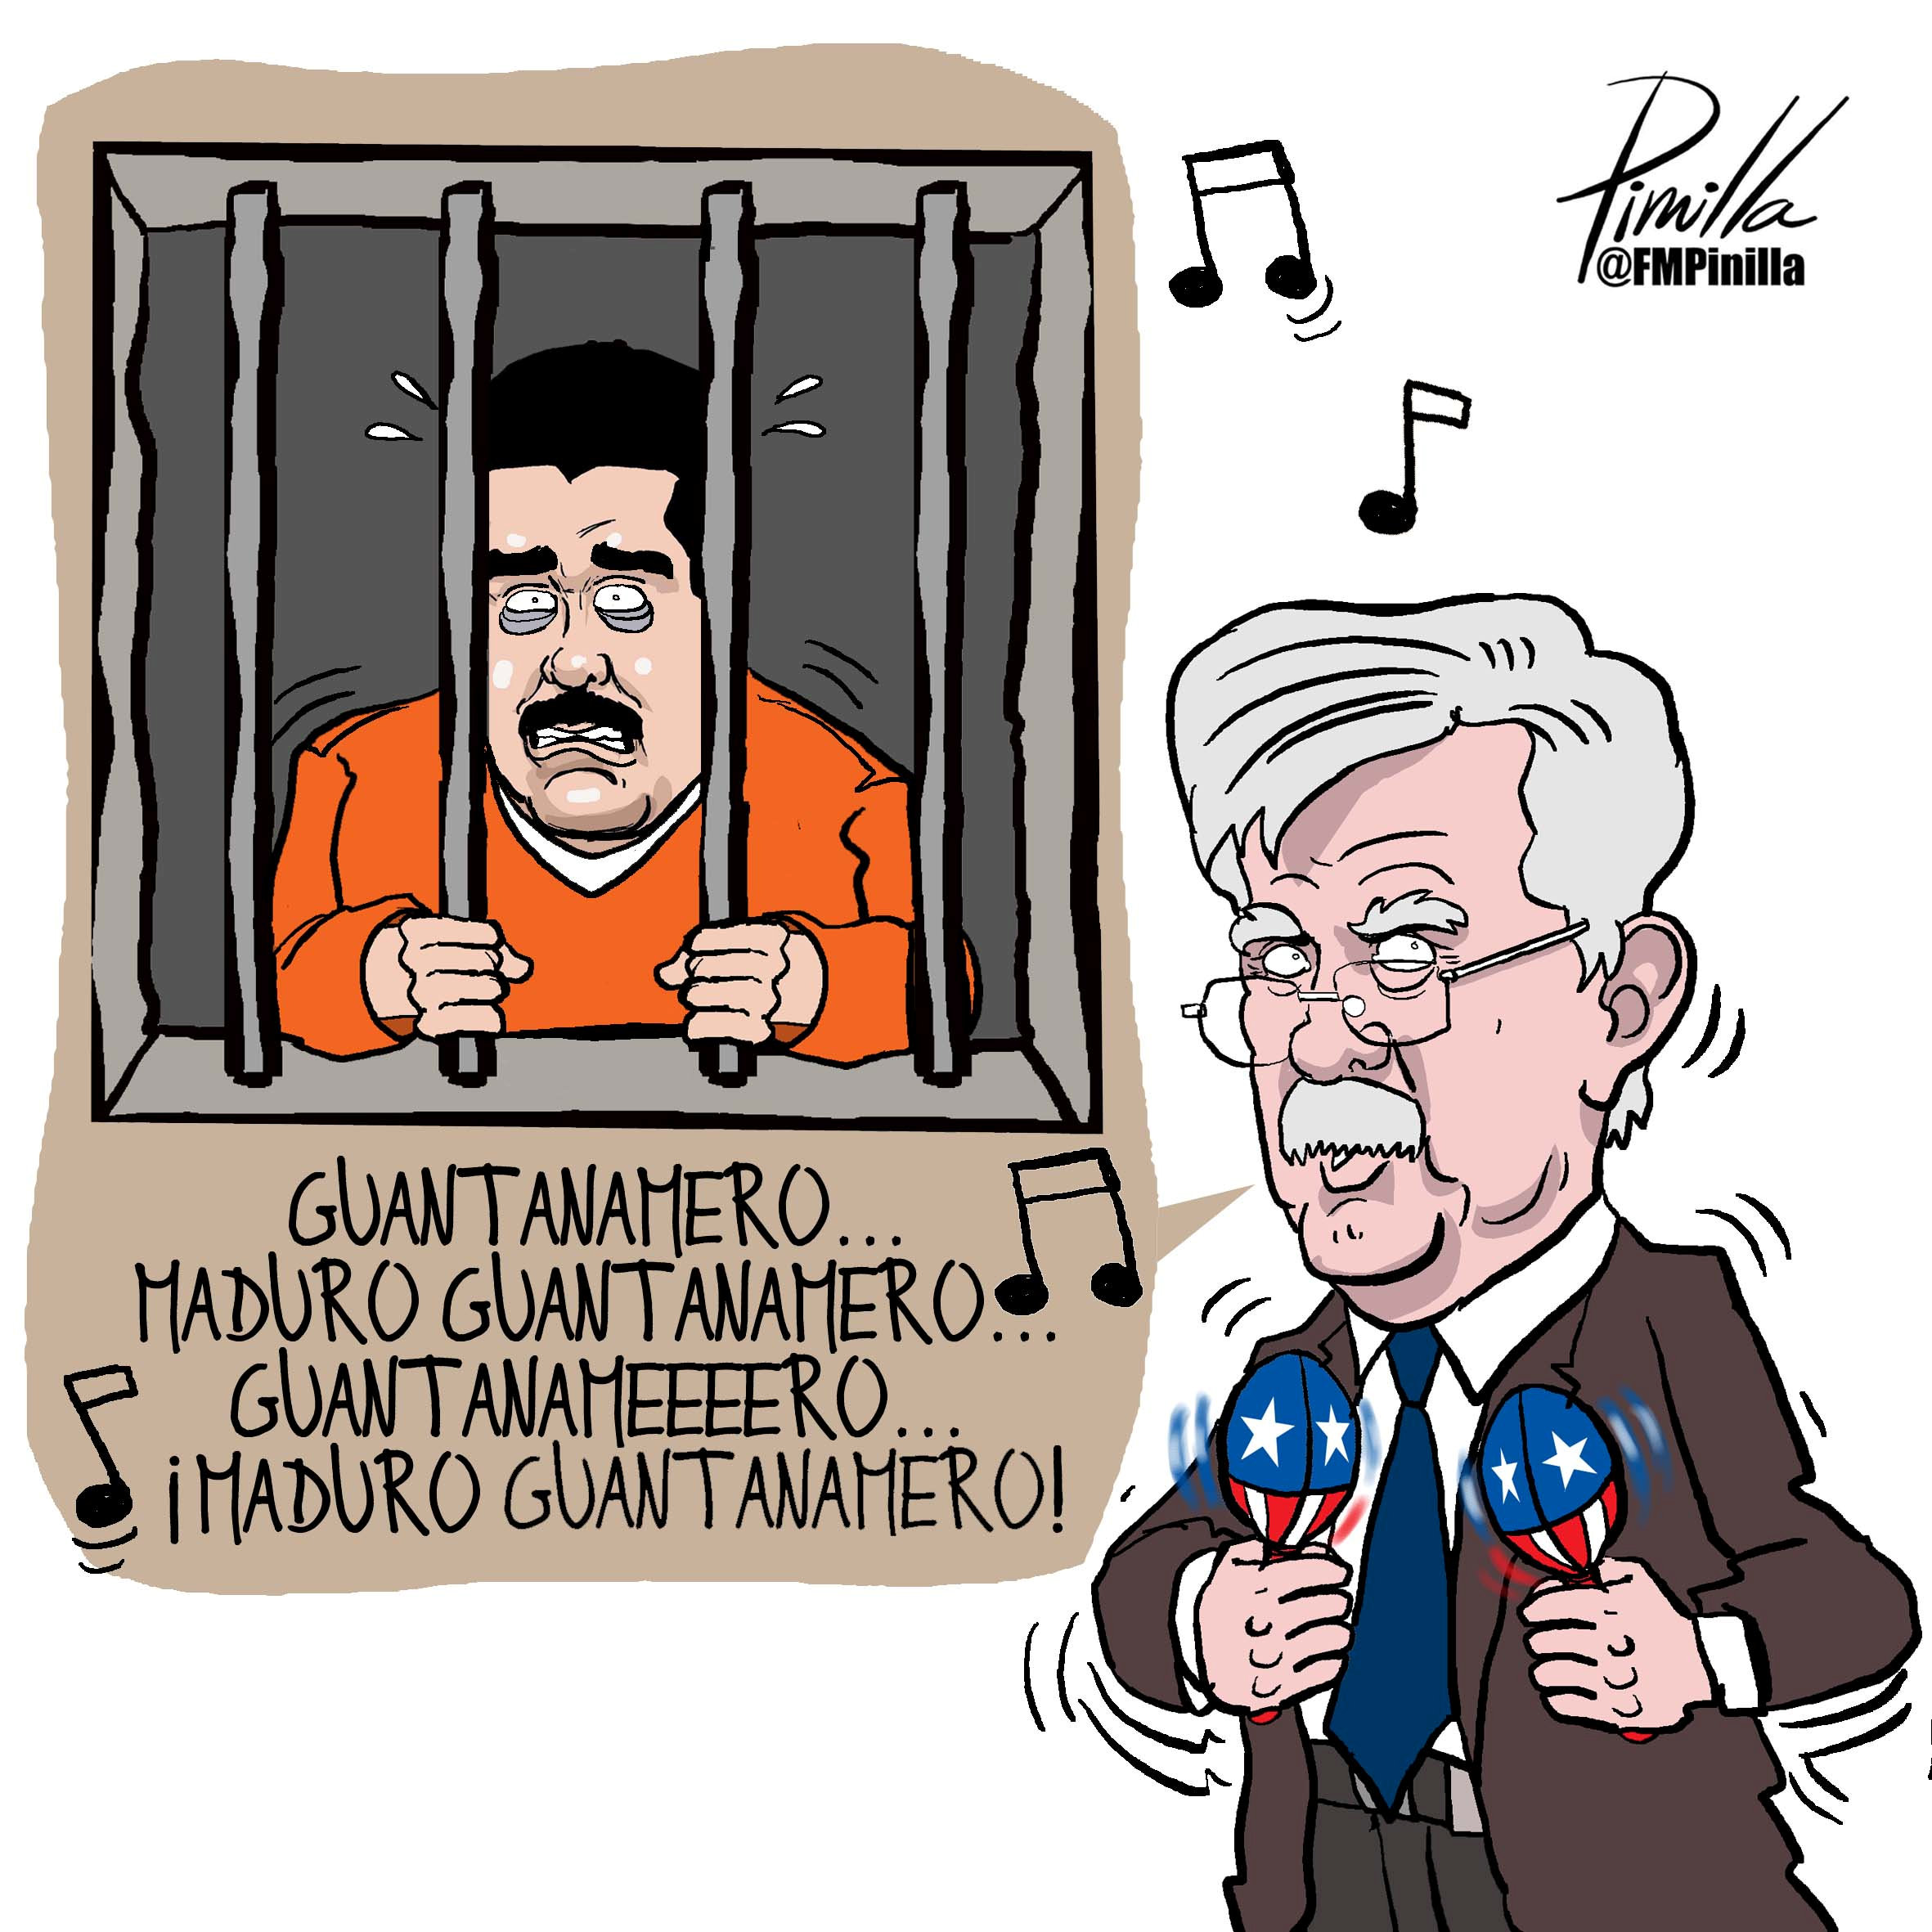 Twitter, amenazas y caricaturas: La afilada campaña de Bolton contra Maduro